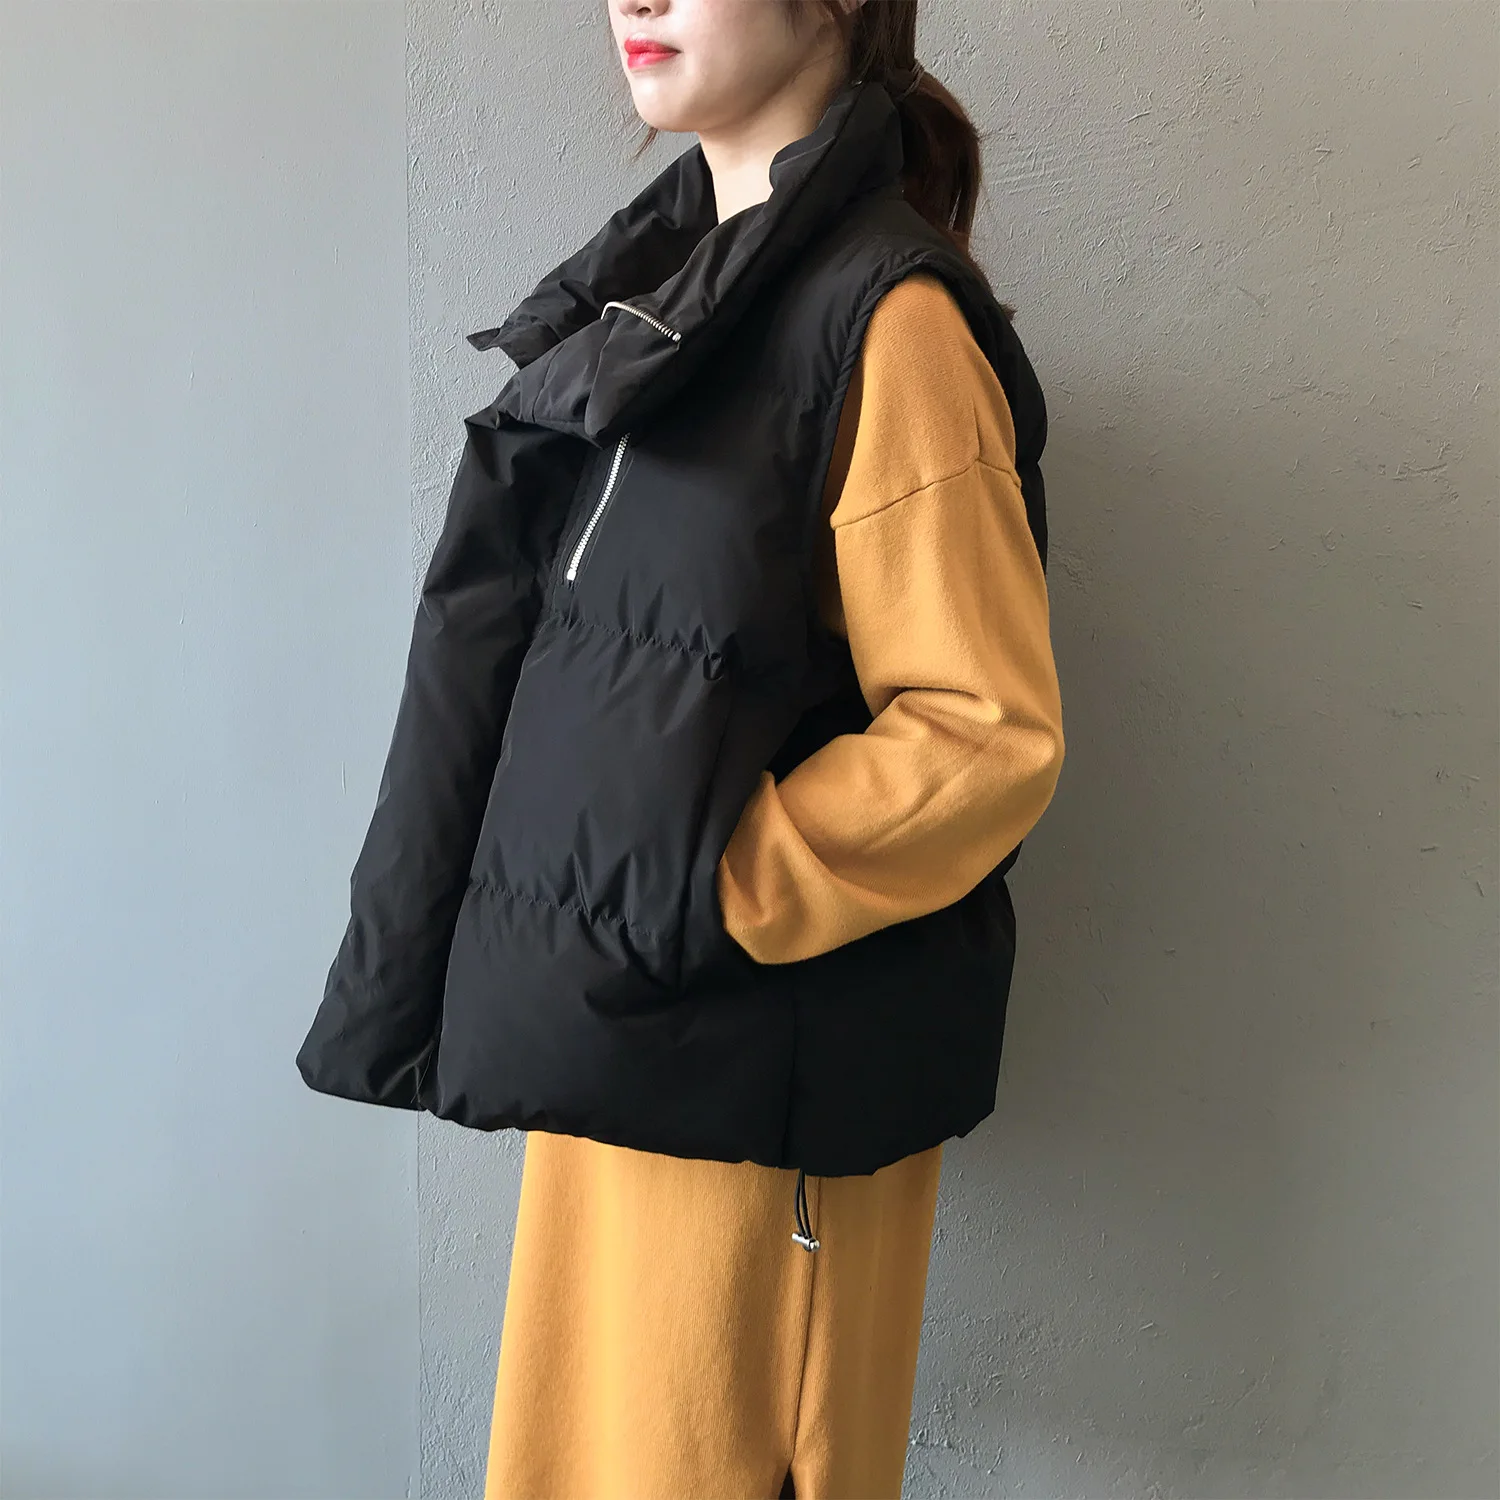 HXJJP женский корейский стиль сплошной без рукавов зимний теплый зимний жилет пальто однобортный свободный Толстый модный жилет